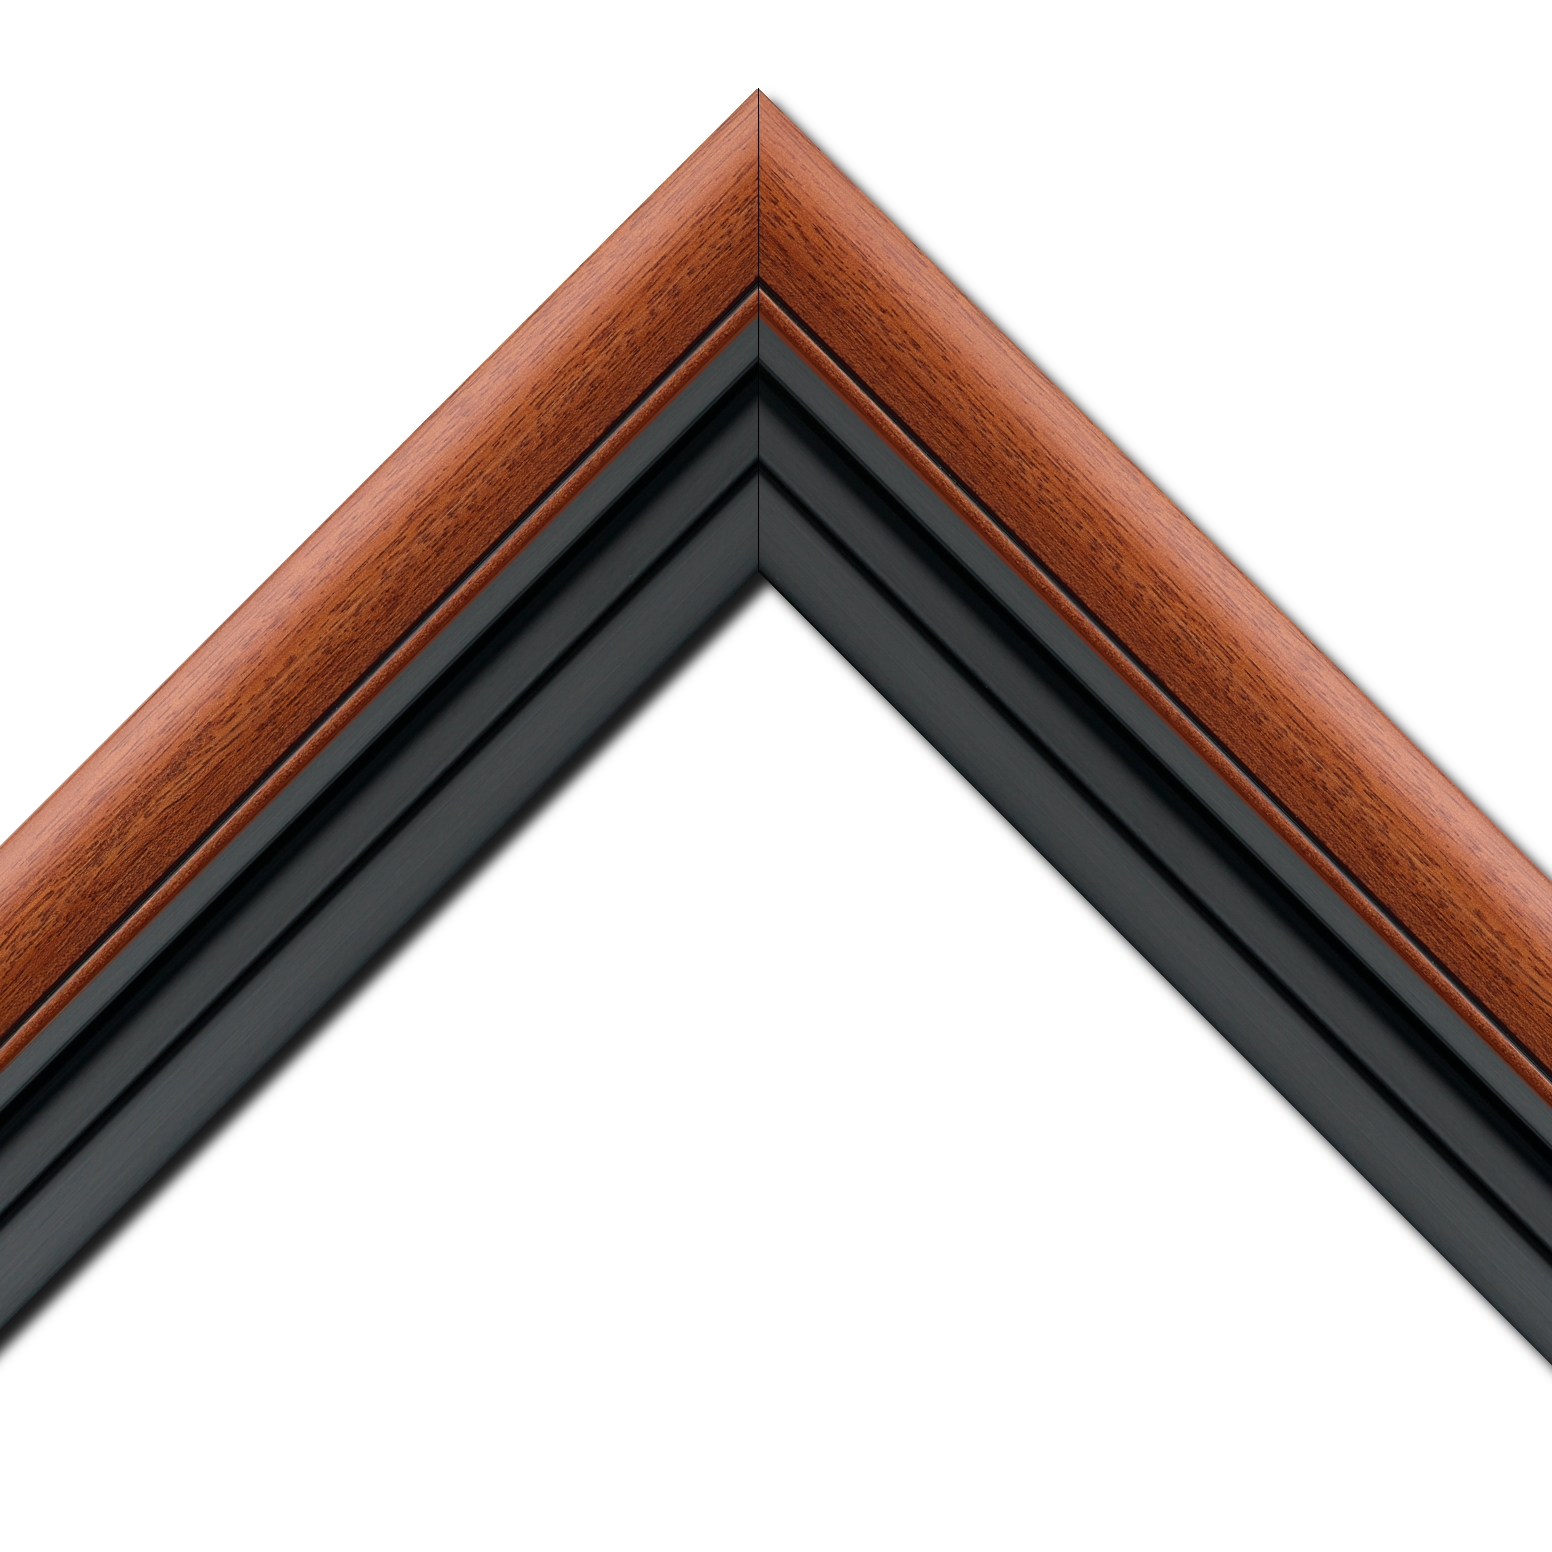 Baguette bois profil arrondi largeur 4.7cm couleur marron ton bois satiné rehaussé d'un filet noir + bois caisse américaine profil escalier largeur 4.4cm noir mat   (spécialement conçu pour les châssis d'une épaisseur jusqu’à 2.5cm ) largeur total du cadre : 8.3cm